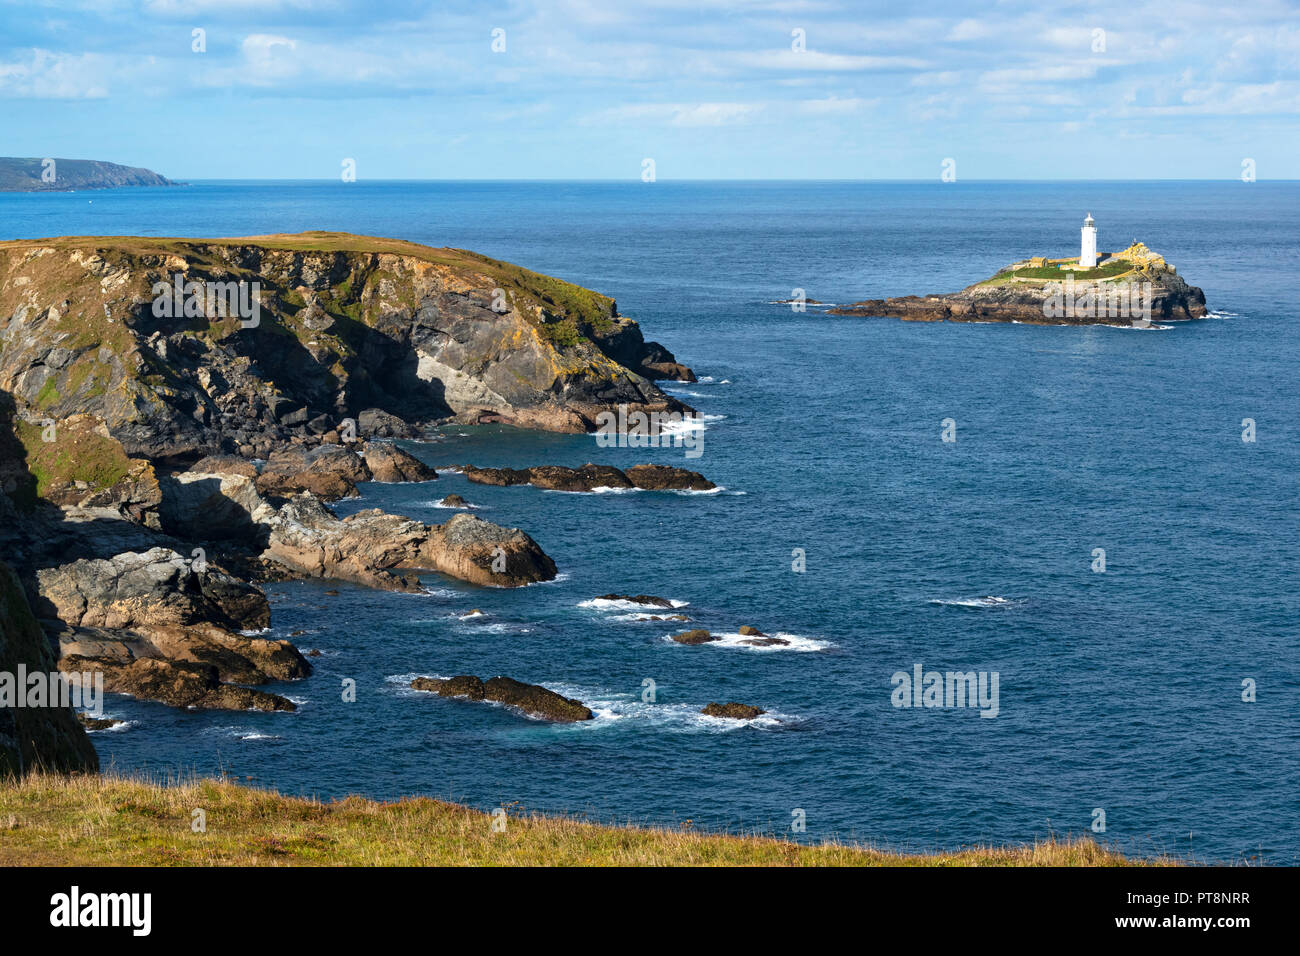 Blick auf navax Point und godrevy Island Lighthouse in St. Ives Bay, Cornwall, England, Großbritannien, Großbritannien. Stockfoto